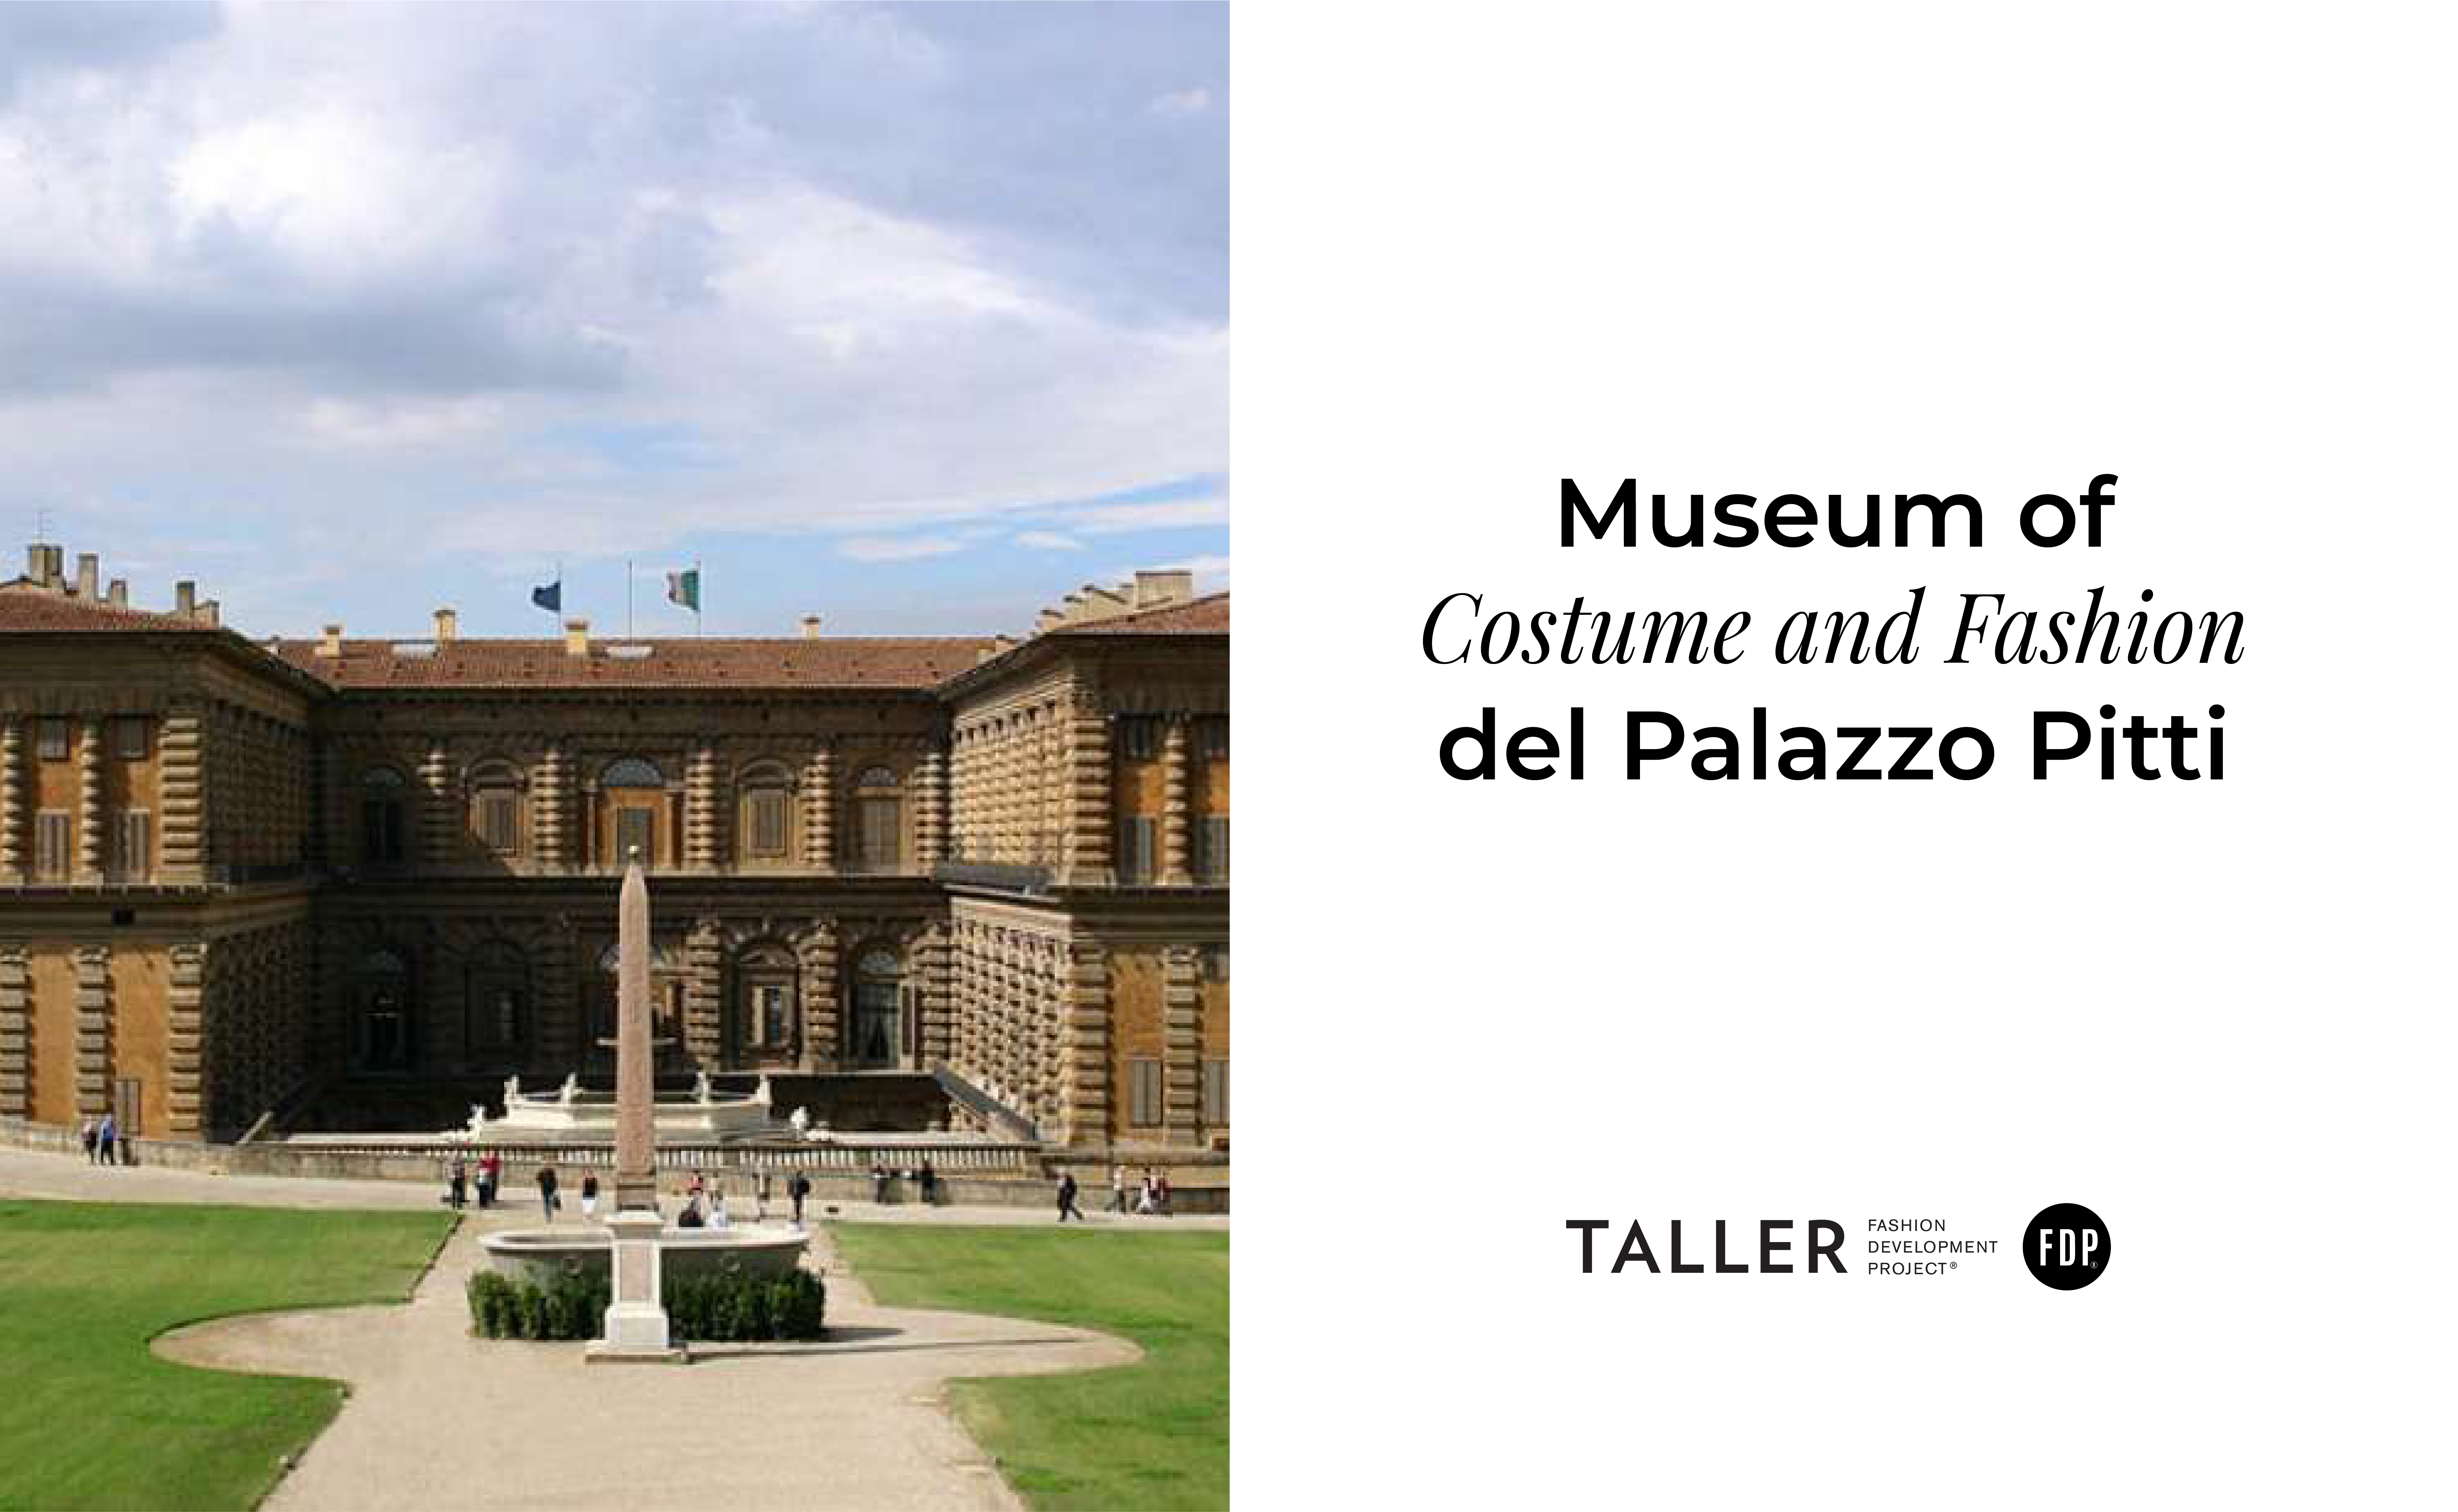 ¿Cuál es la historia detrás del Museum of Costume and Fashion del Palazzo Pitti?